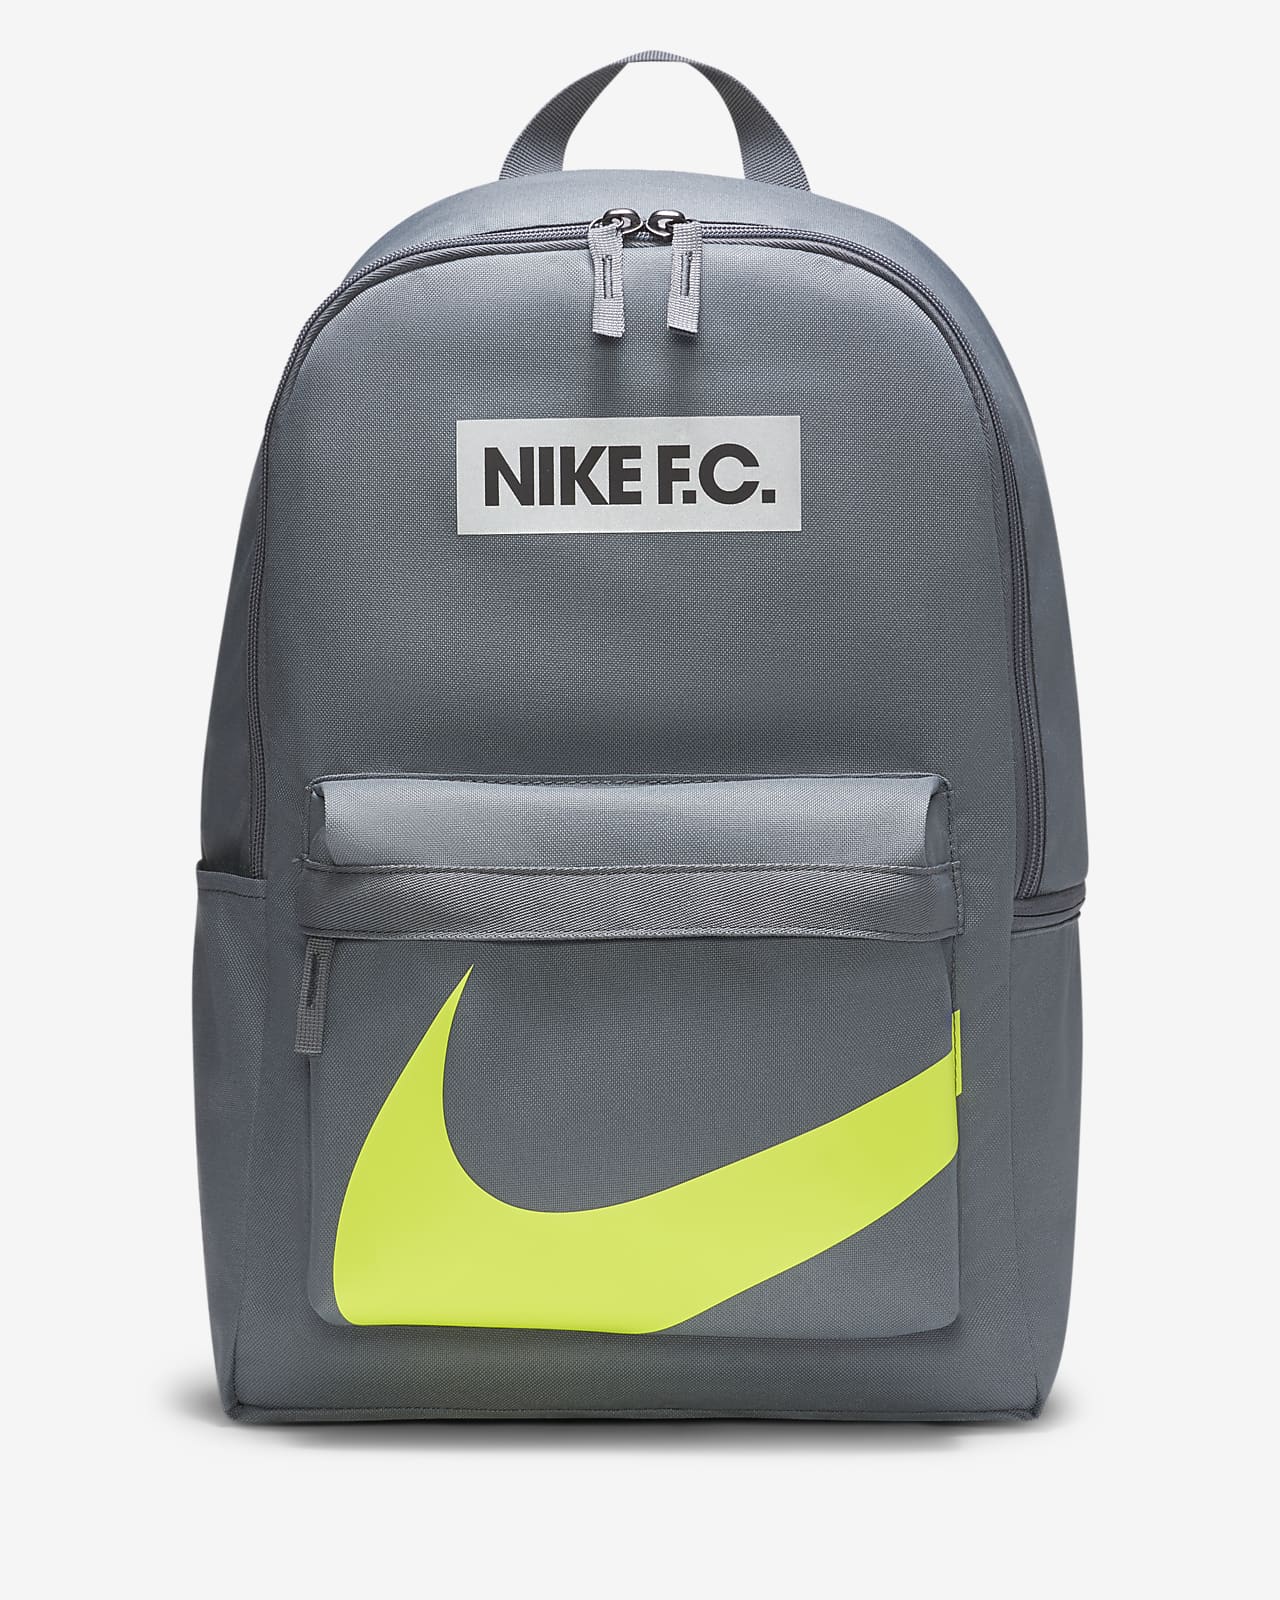 Una vez más Violín Estúpido Nike F.C. Soccer Backpack. Nike JP